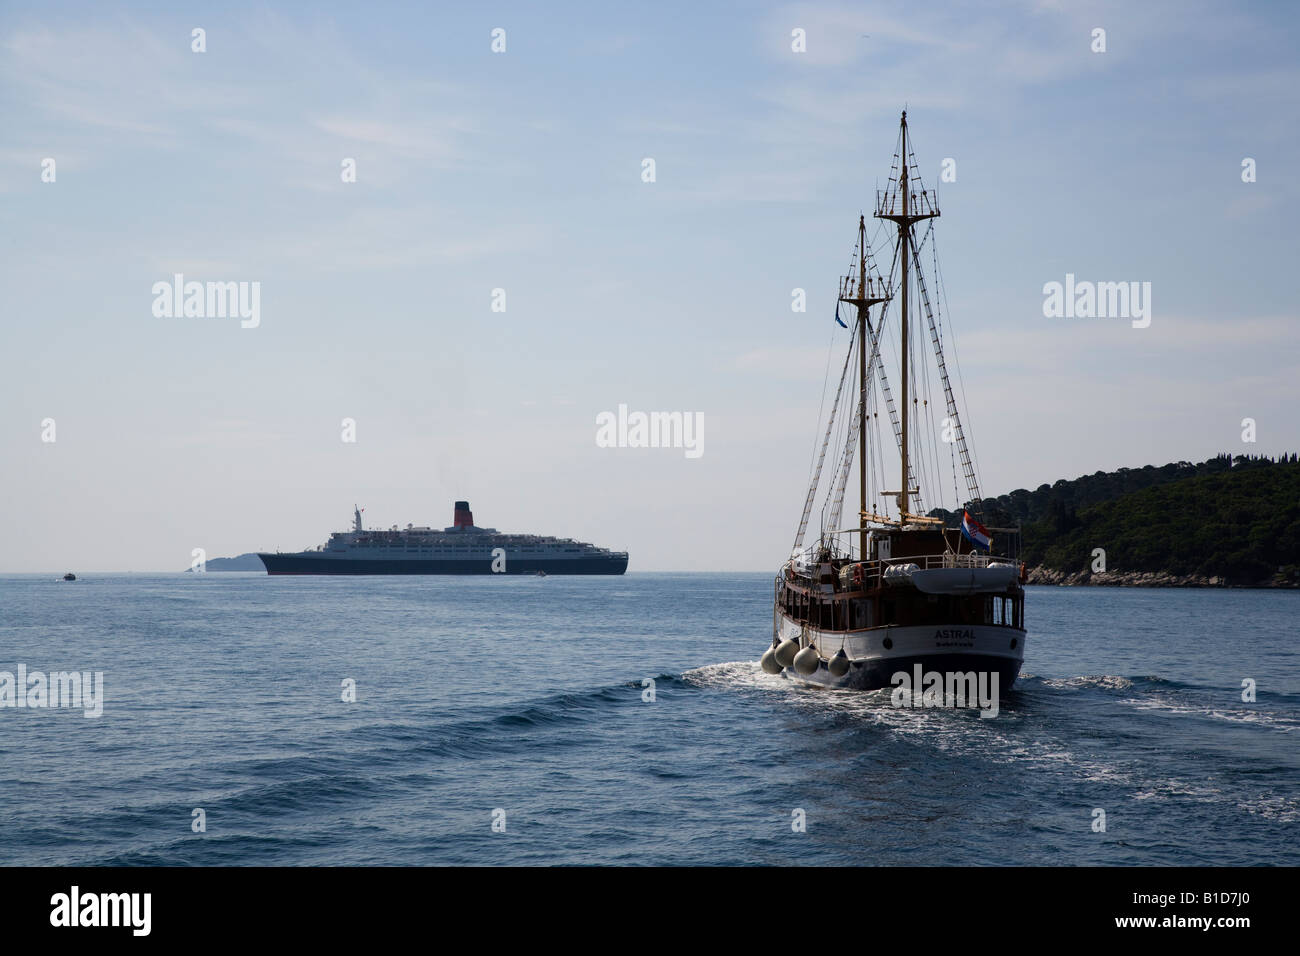 Le voilier Astral quitter Dubrovnik vers l'île de Lopud avec Cunard QE2 à l'ancre Banque D'Images